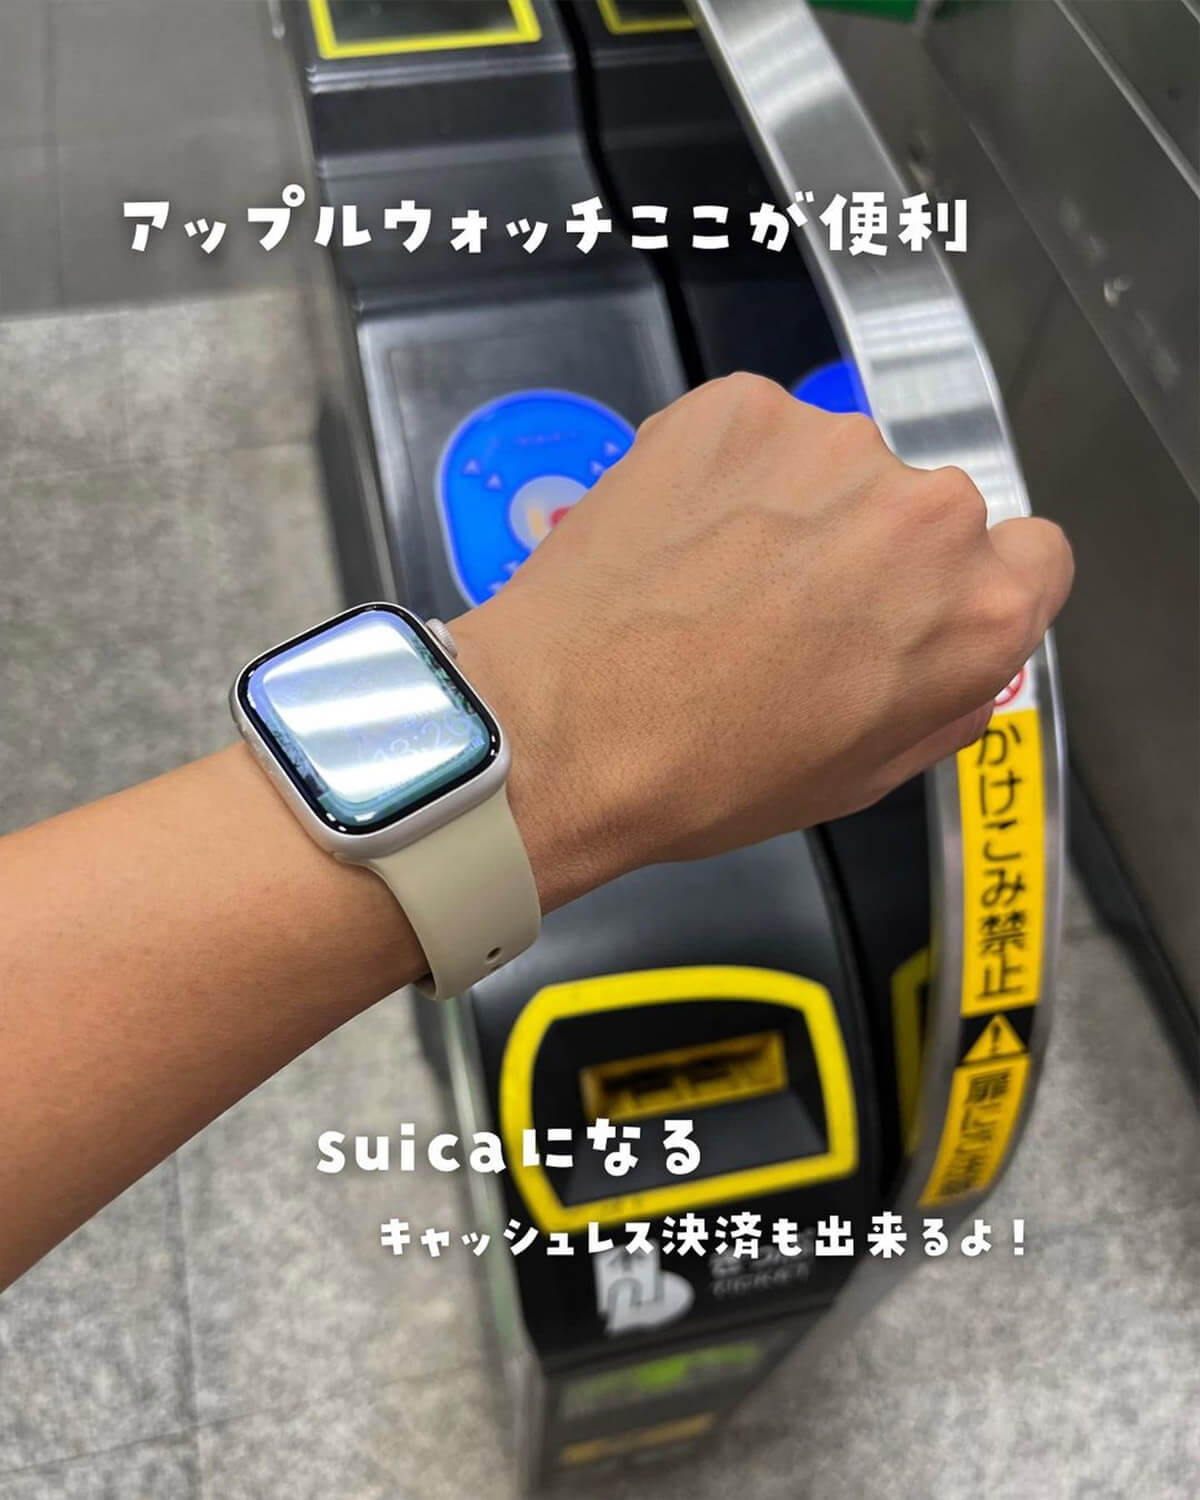 Apple Watchの便利なところ2